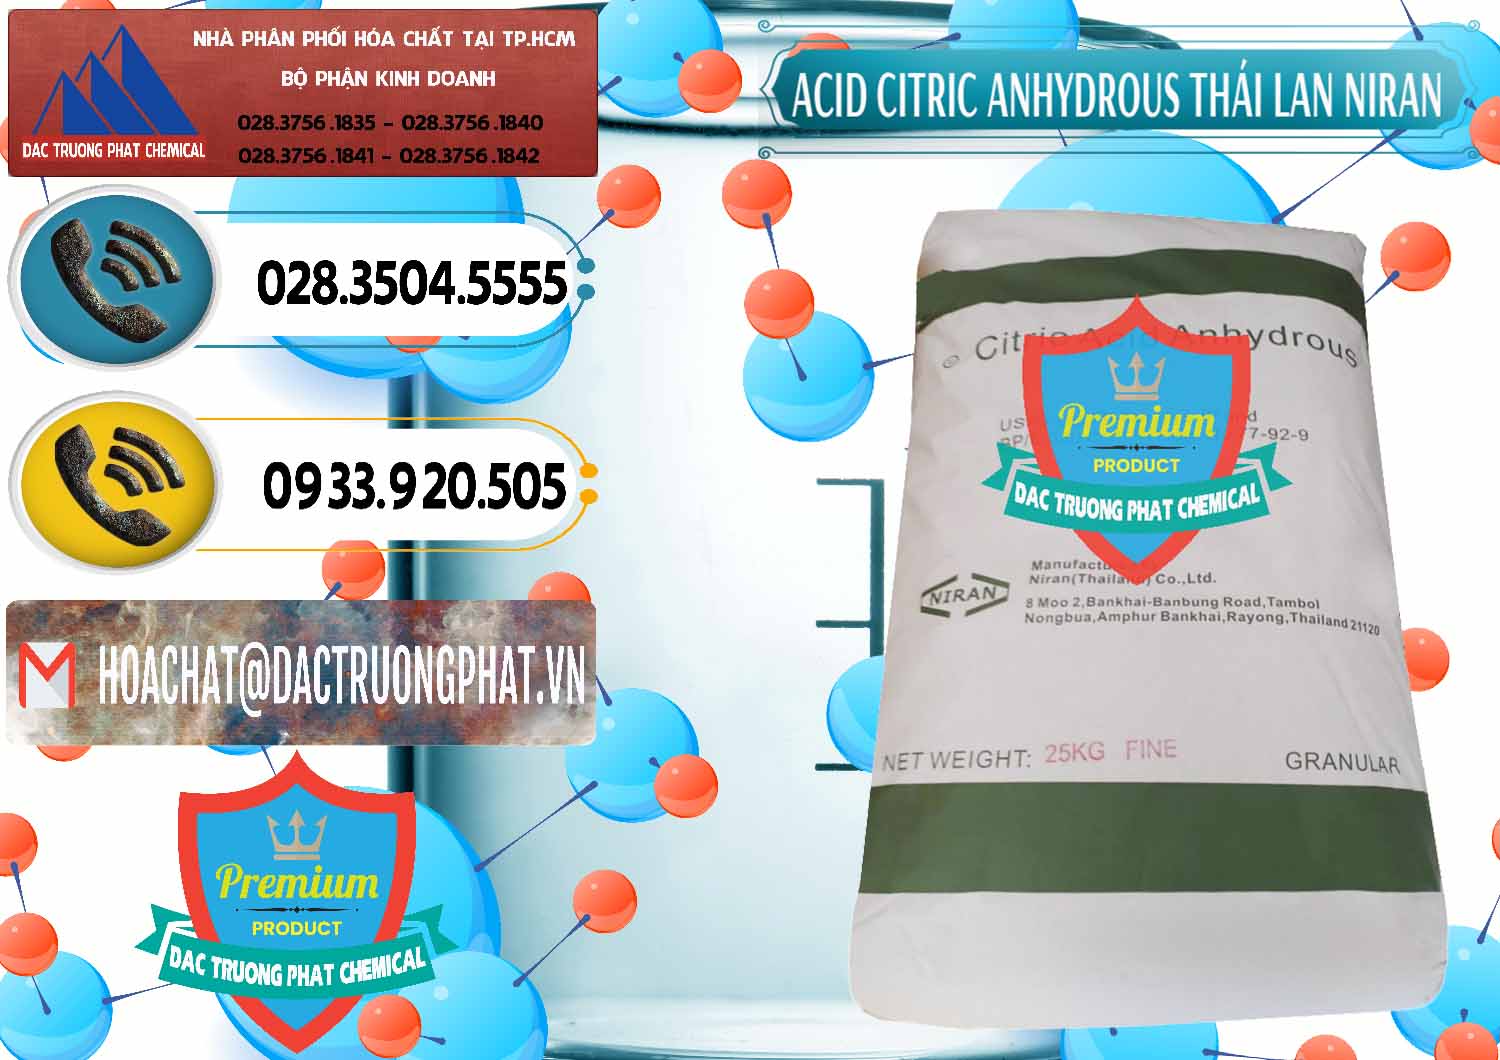 Cty nhập khẩu ( bán ) Acid Citric - Axit Citric Anhydrous - Thái Lan Niran - 0231 - Công ty chuyên phân phối - nhập khẩu hóa chất tại TP.HCM - hoachatdetnhuom.vn